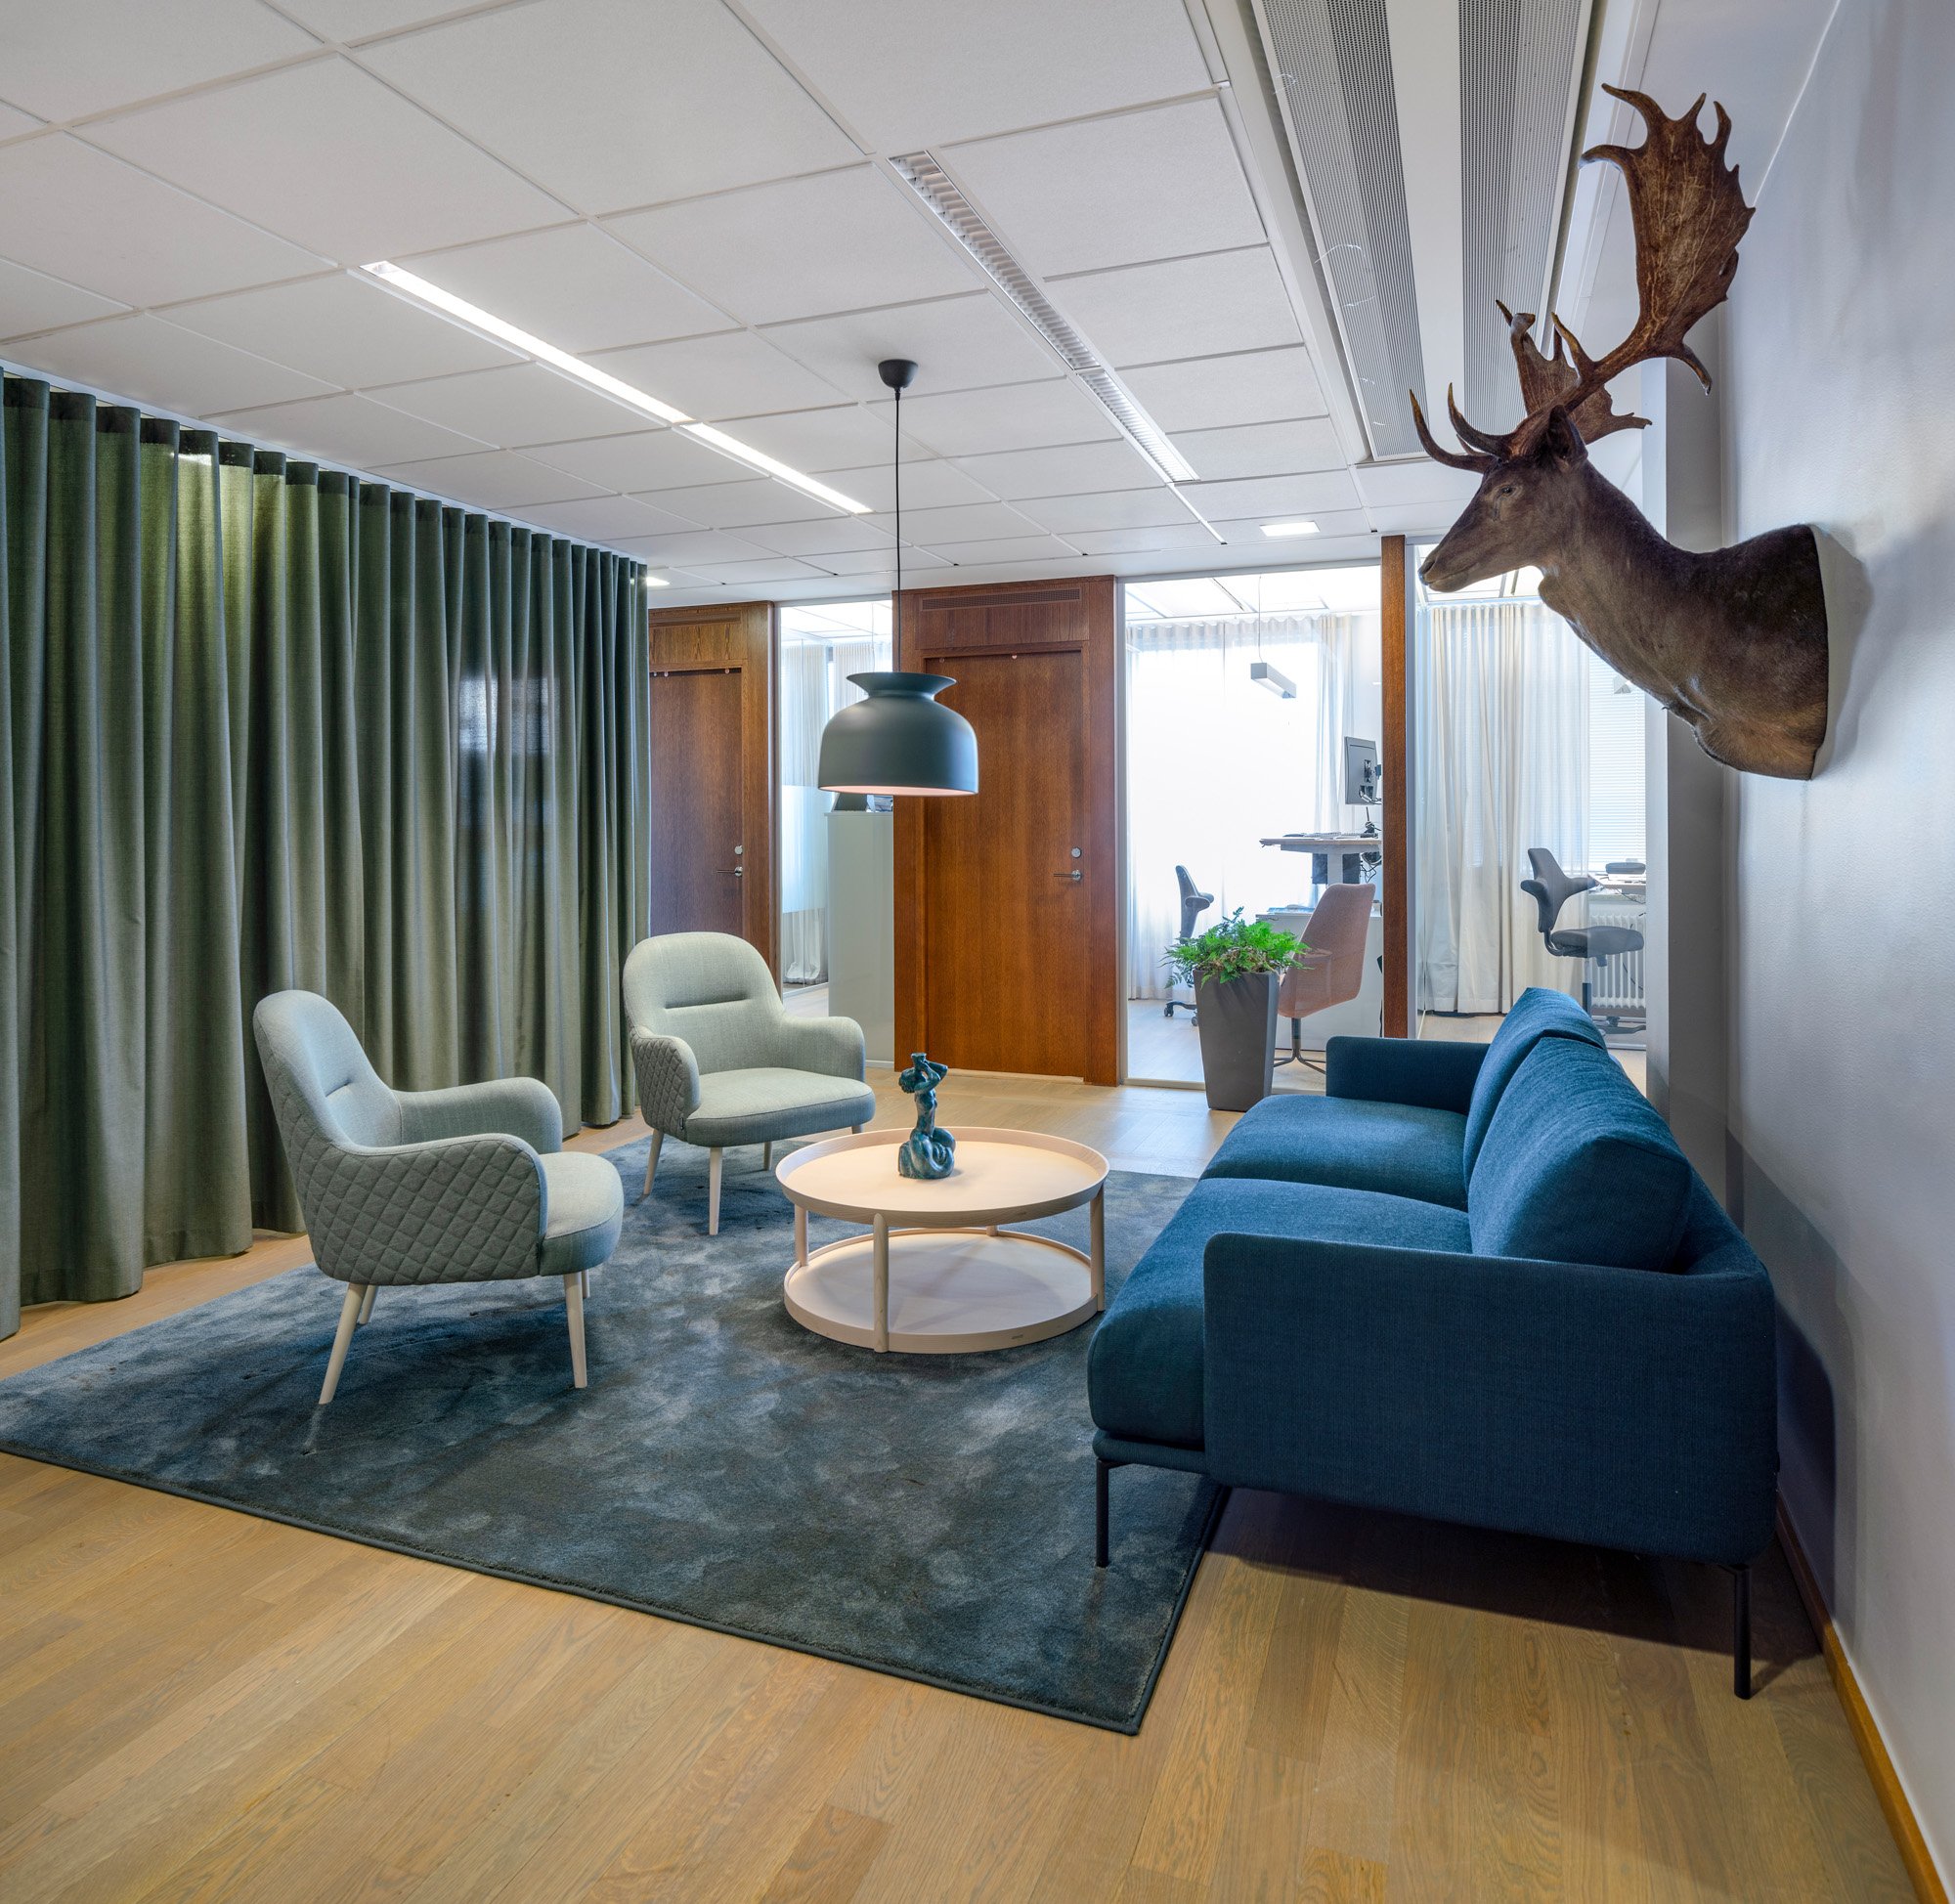 图片[14]|私募股权公司办公室——斯德哥尔摩|ART-Arrakis | 建筑室内设计的创新与灵感